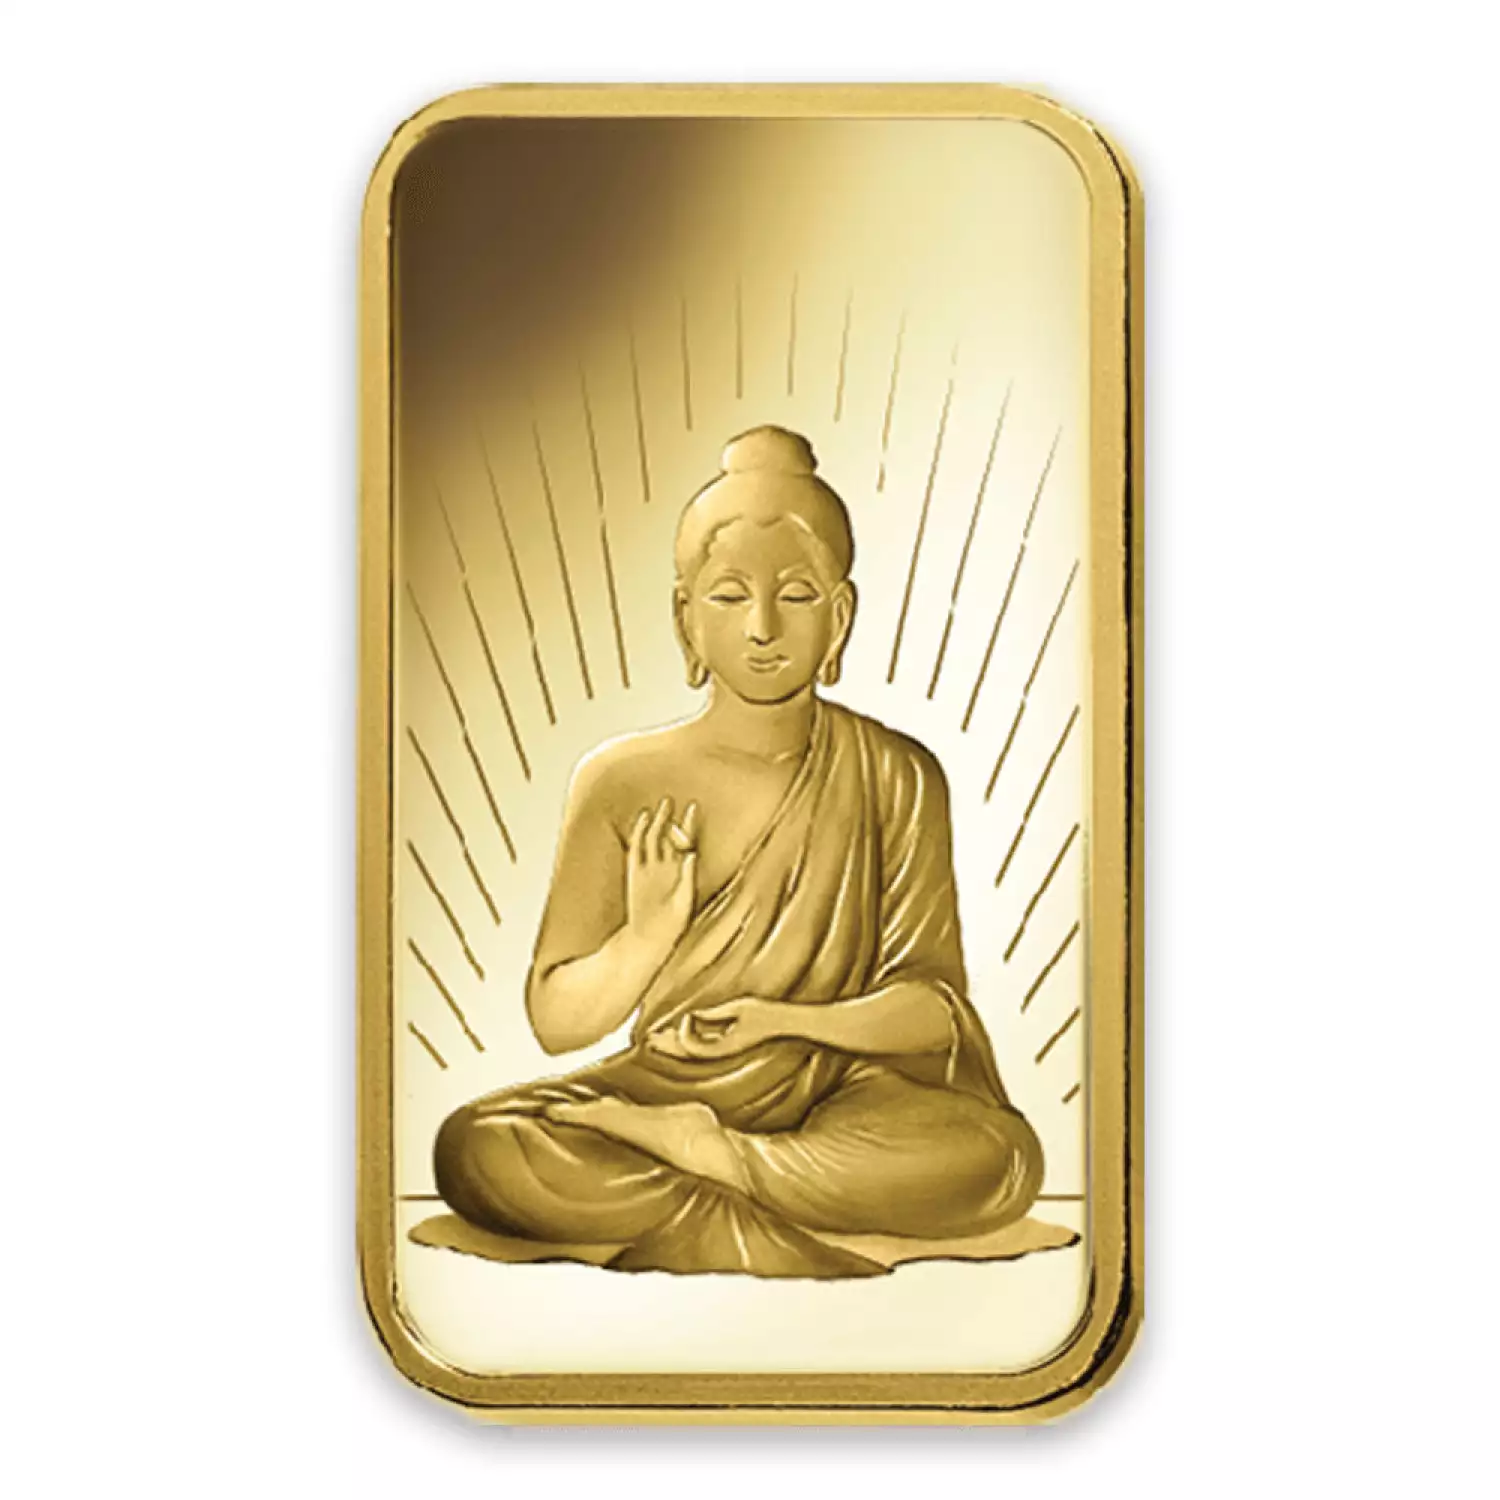 5g PAMP Gold Bar - Buddha (2)